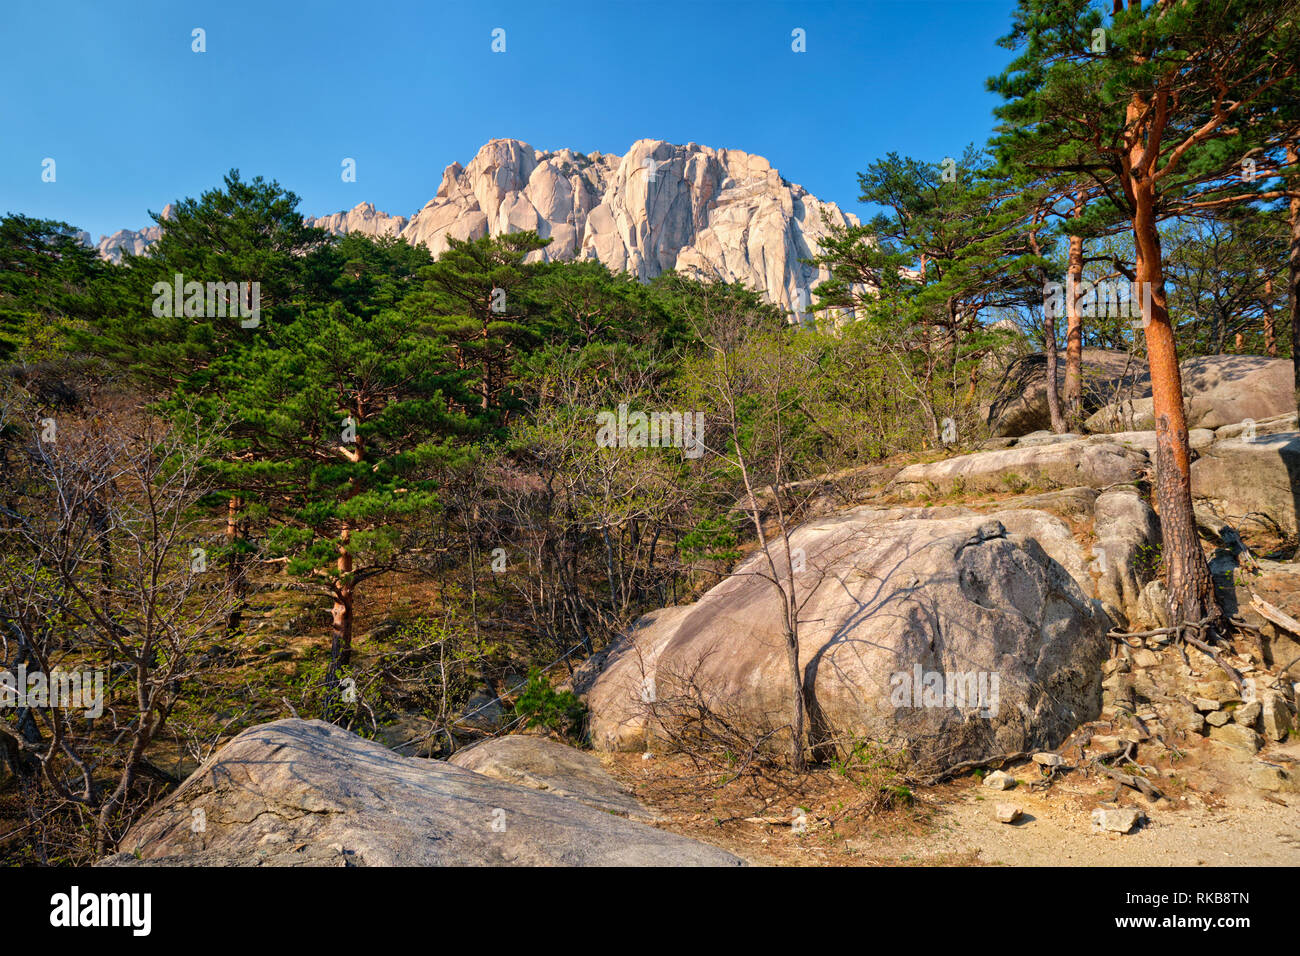 Ulsanbawi rock dans le Parc National de Seoraksan, Corée du Sud Banque D'Images